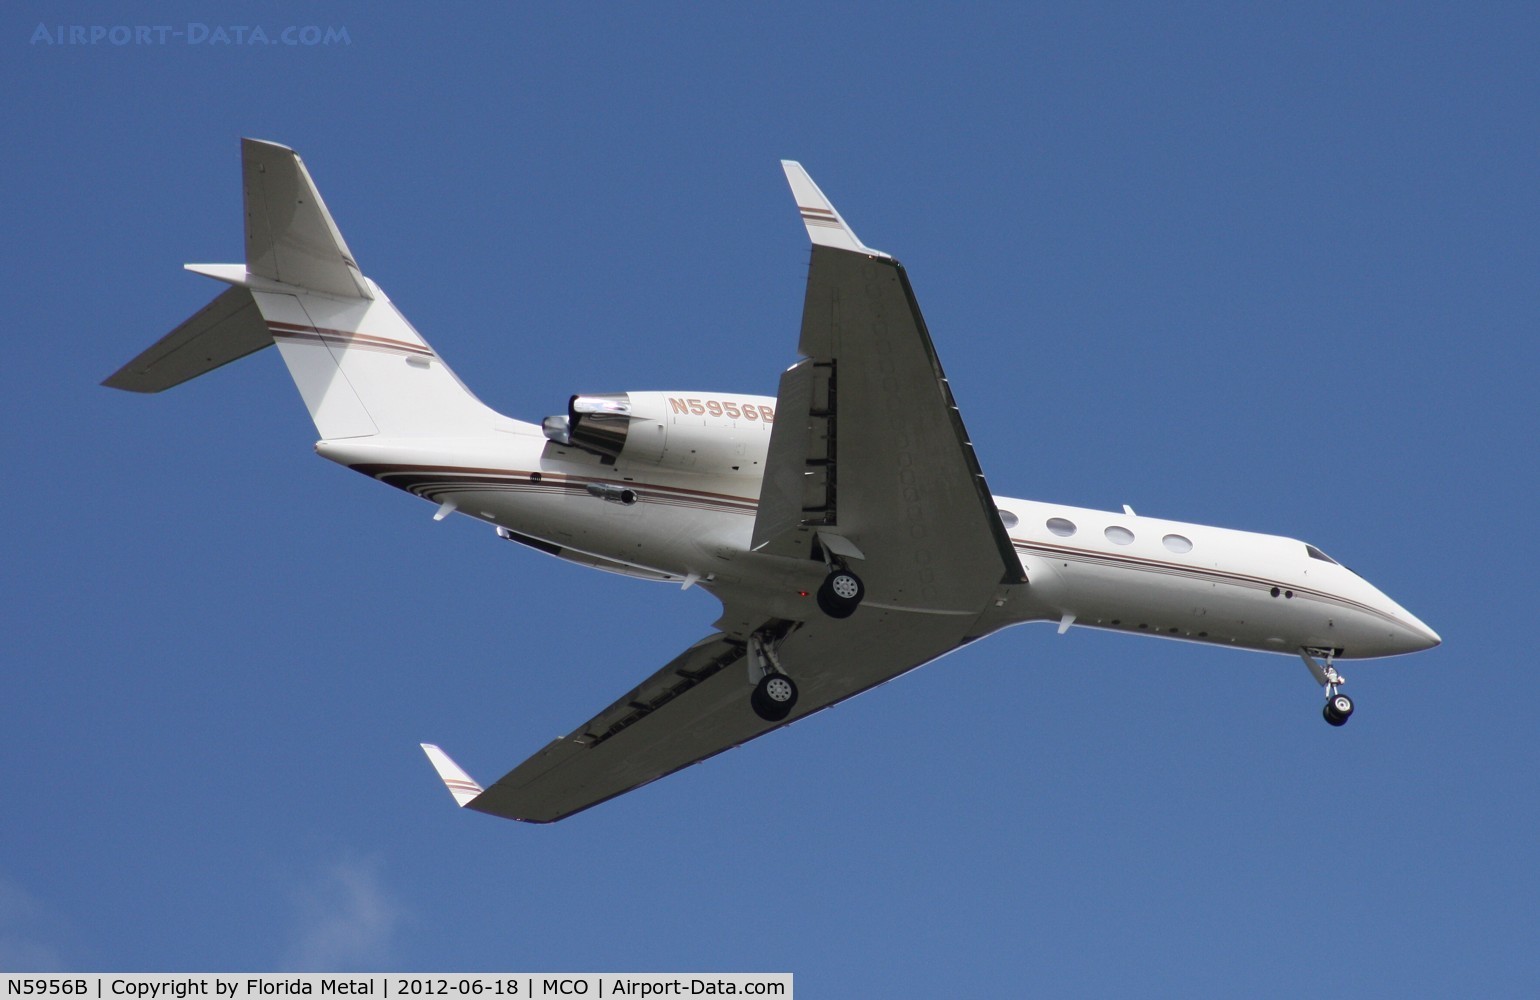 N5956B, 2001 Gulfstream Aerospace G-IV C/N 1469, Gulfstream IV